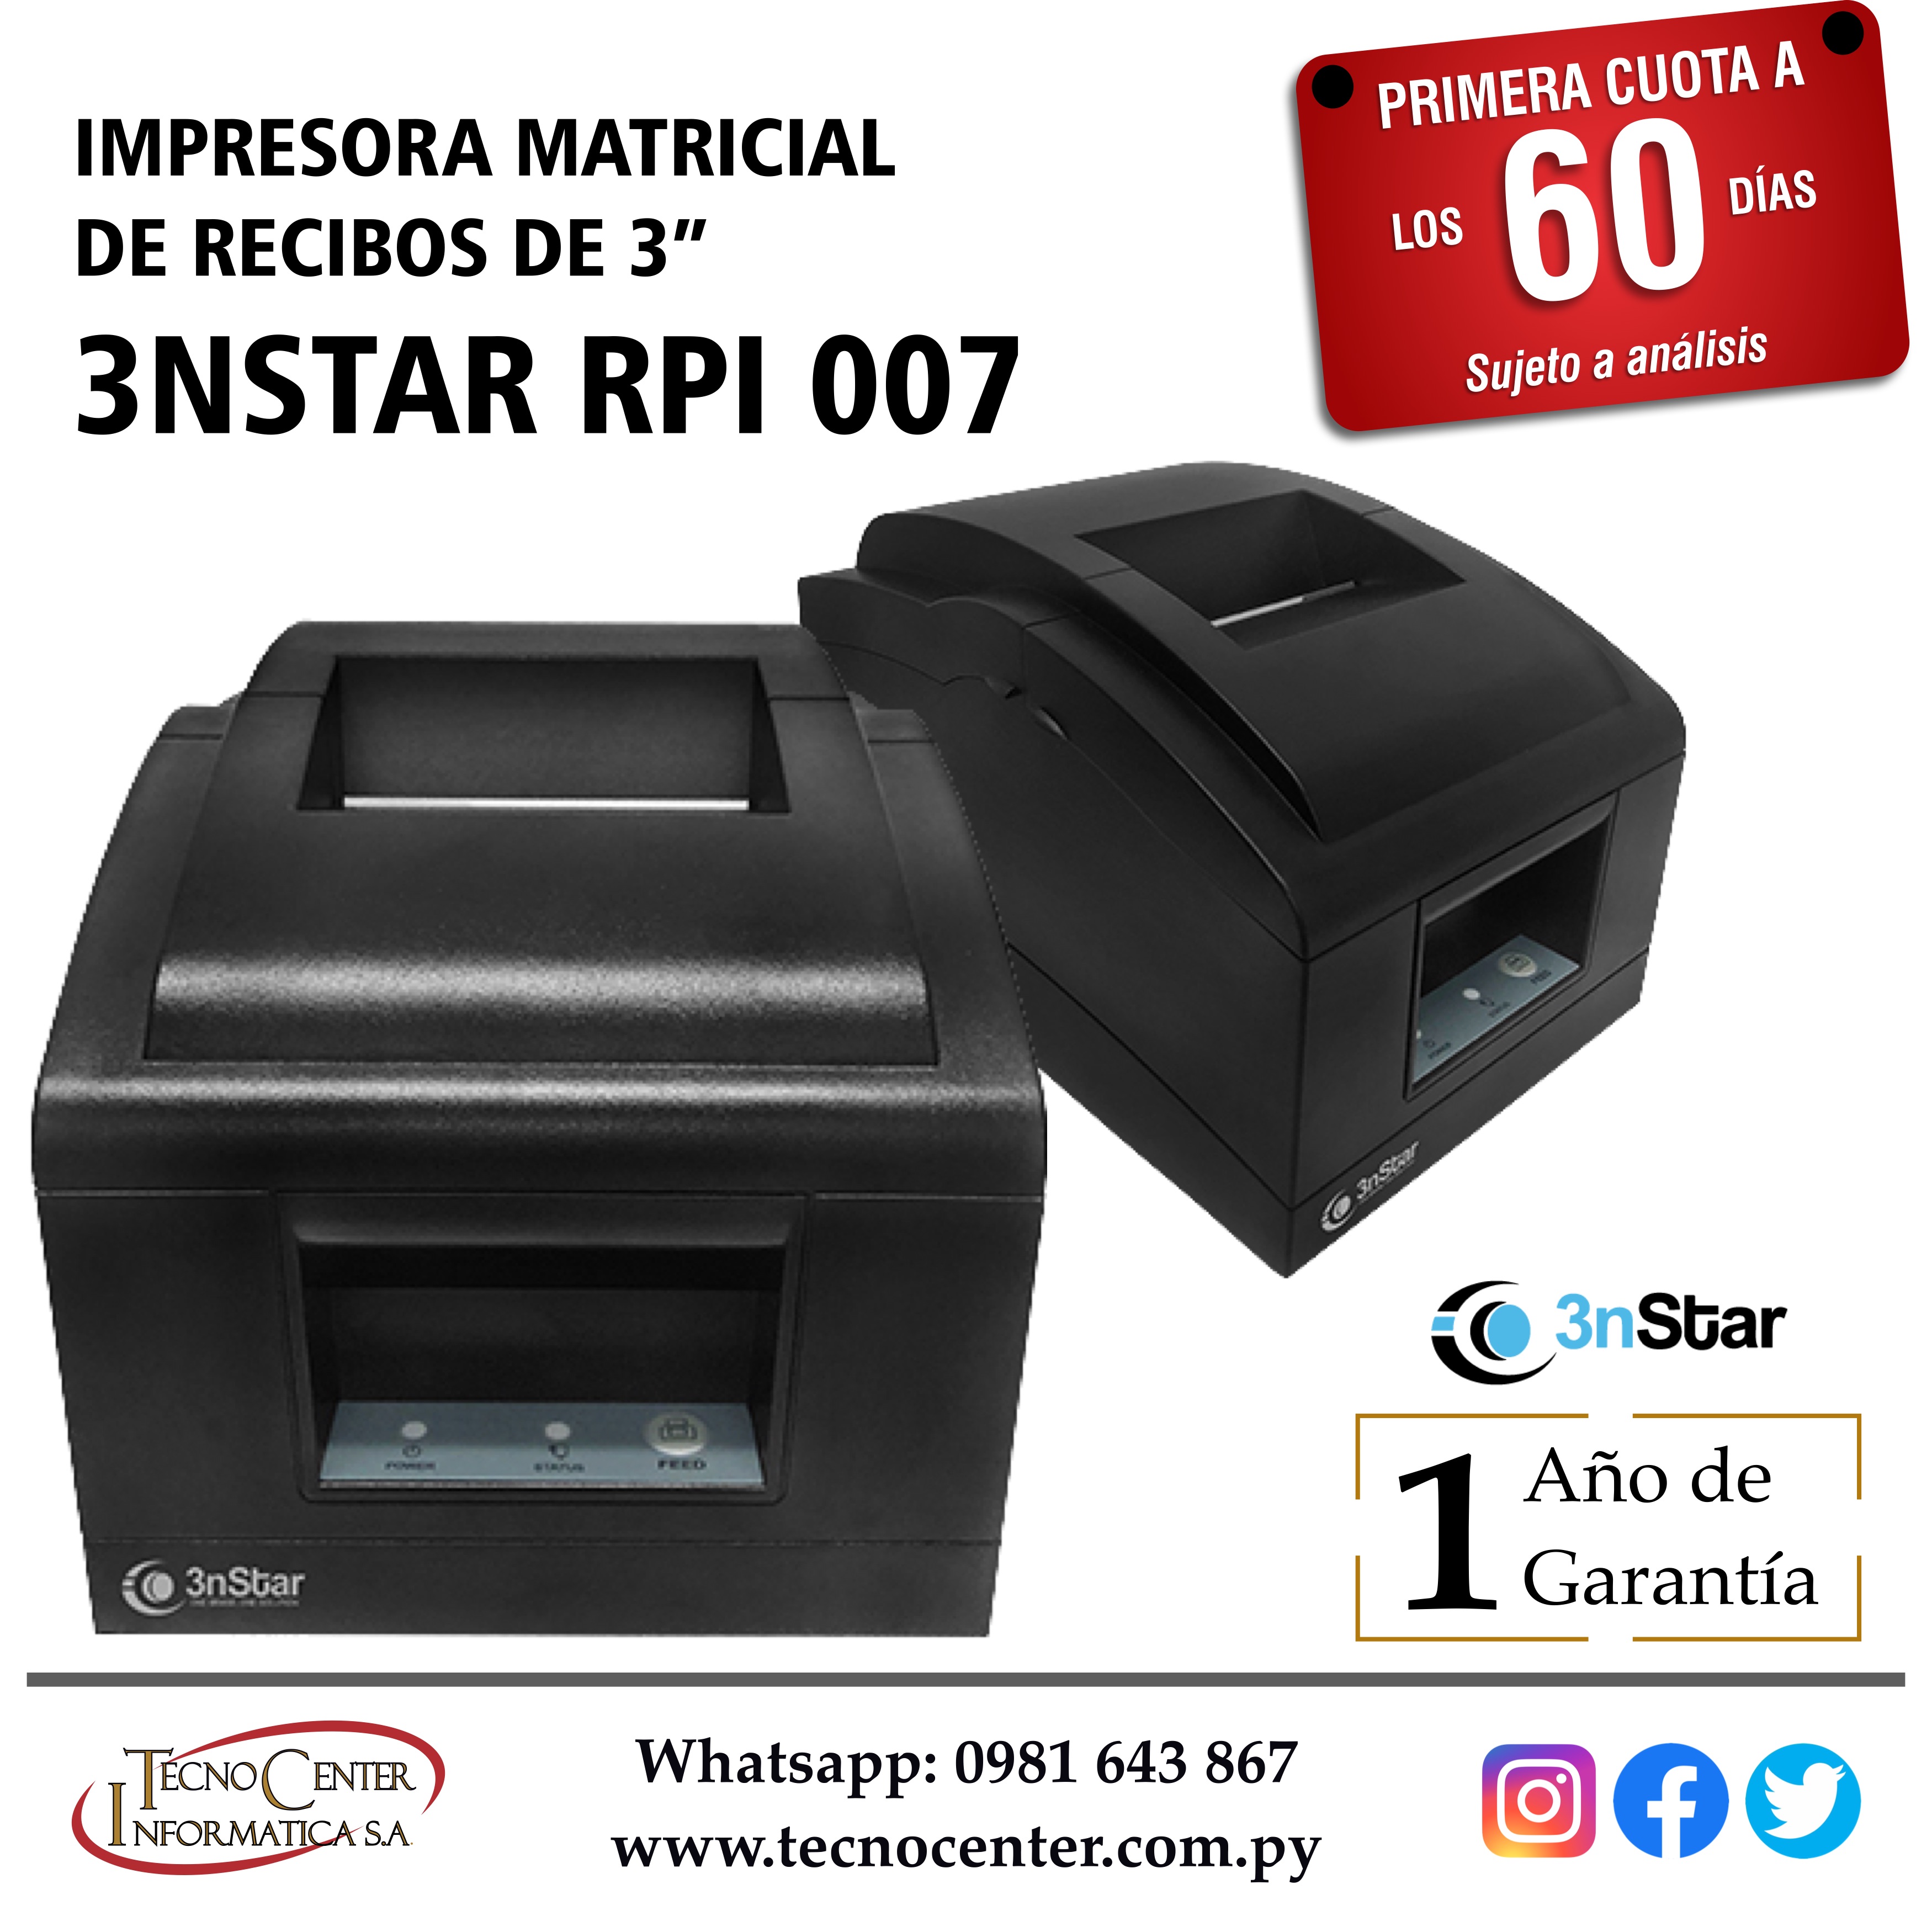 Impresora Matricial de Recibos de 3” 3nStar RPI0